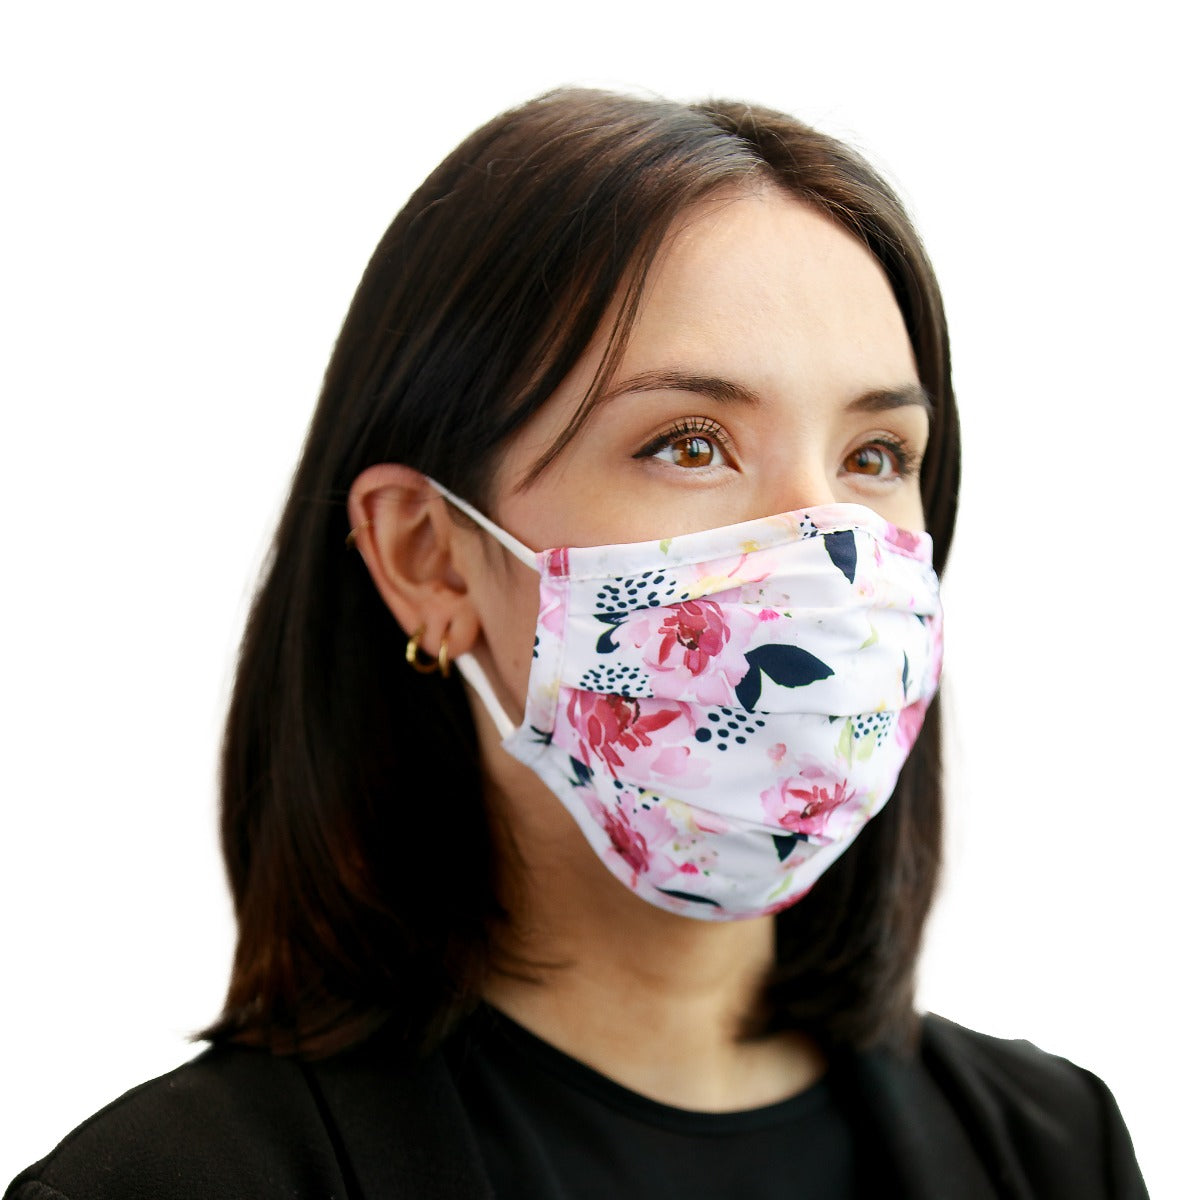 Masque réutilisable blanc pour femme avec fleurs roses et bleu marine